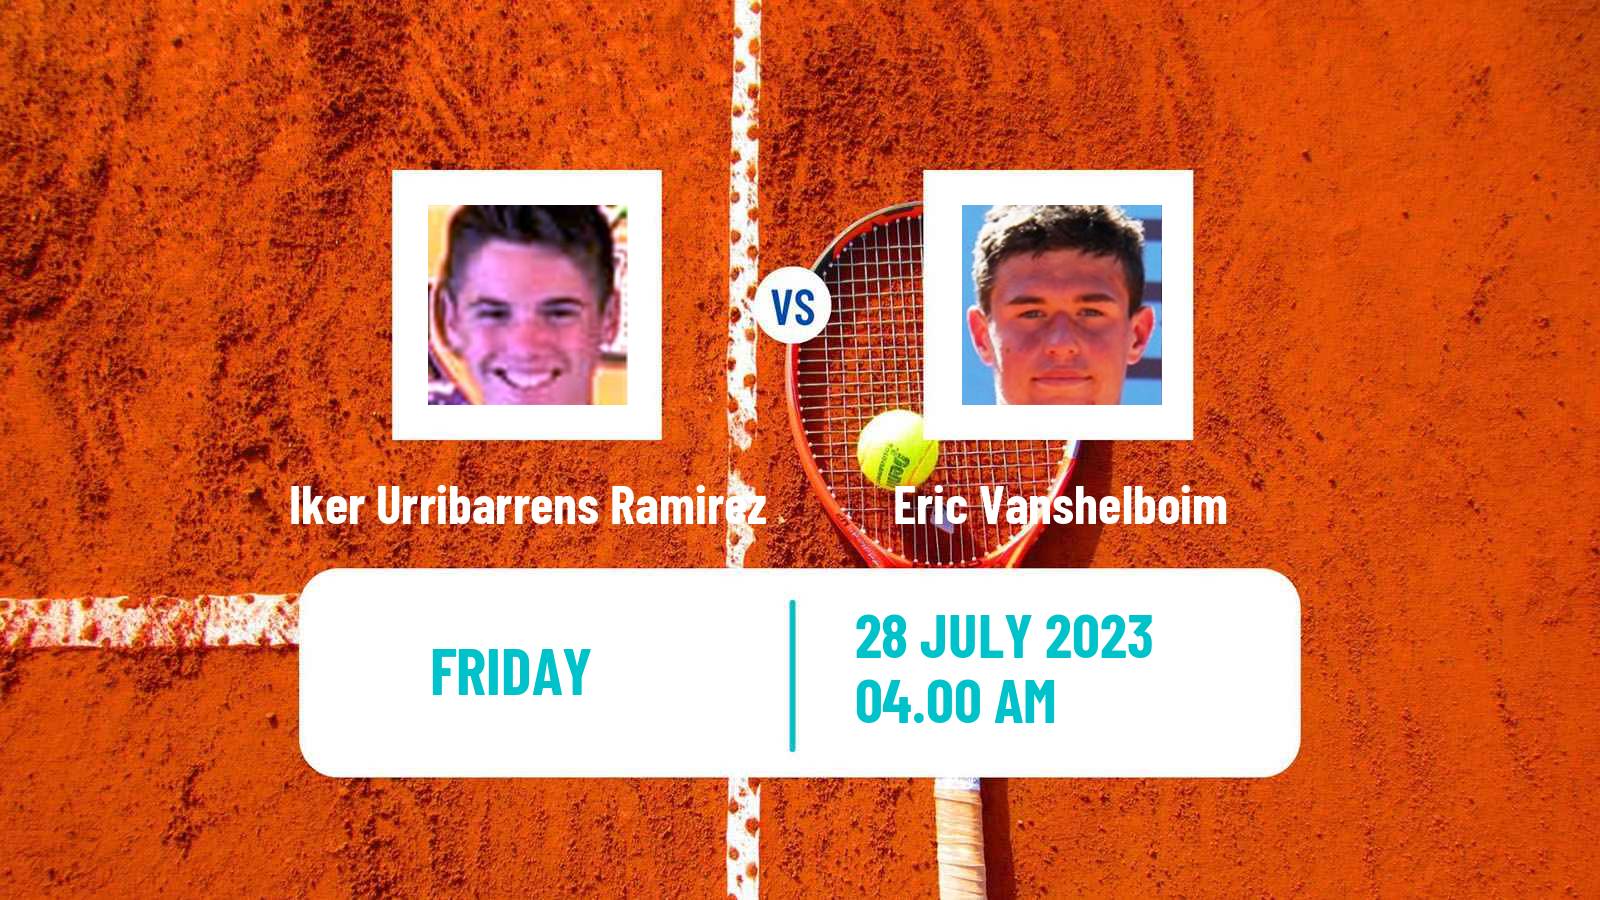 Tennis ITF M25 Denia Men Iker Urribarrens Ramirez - Eric Vanshelboim